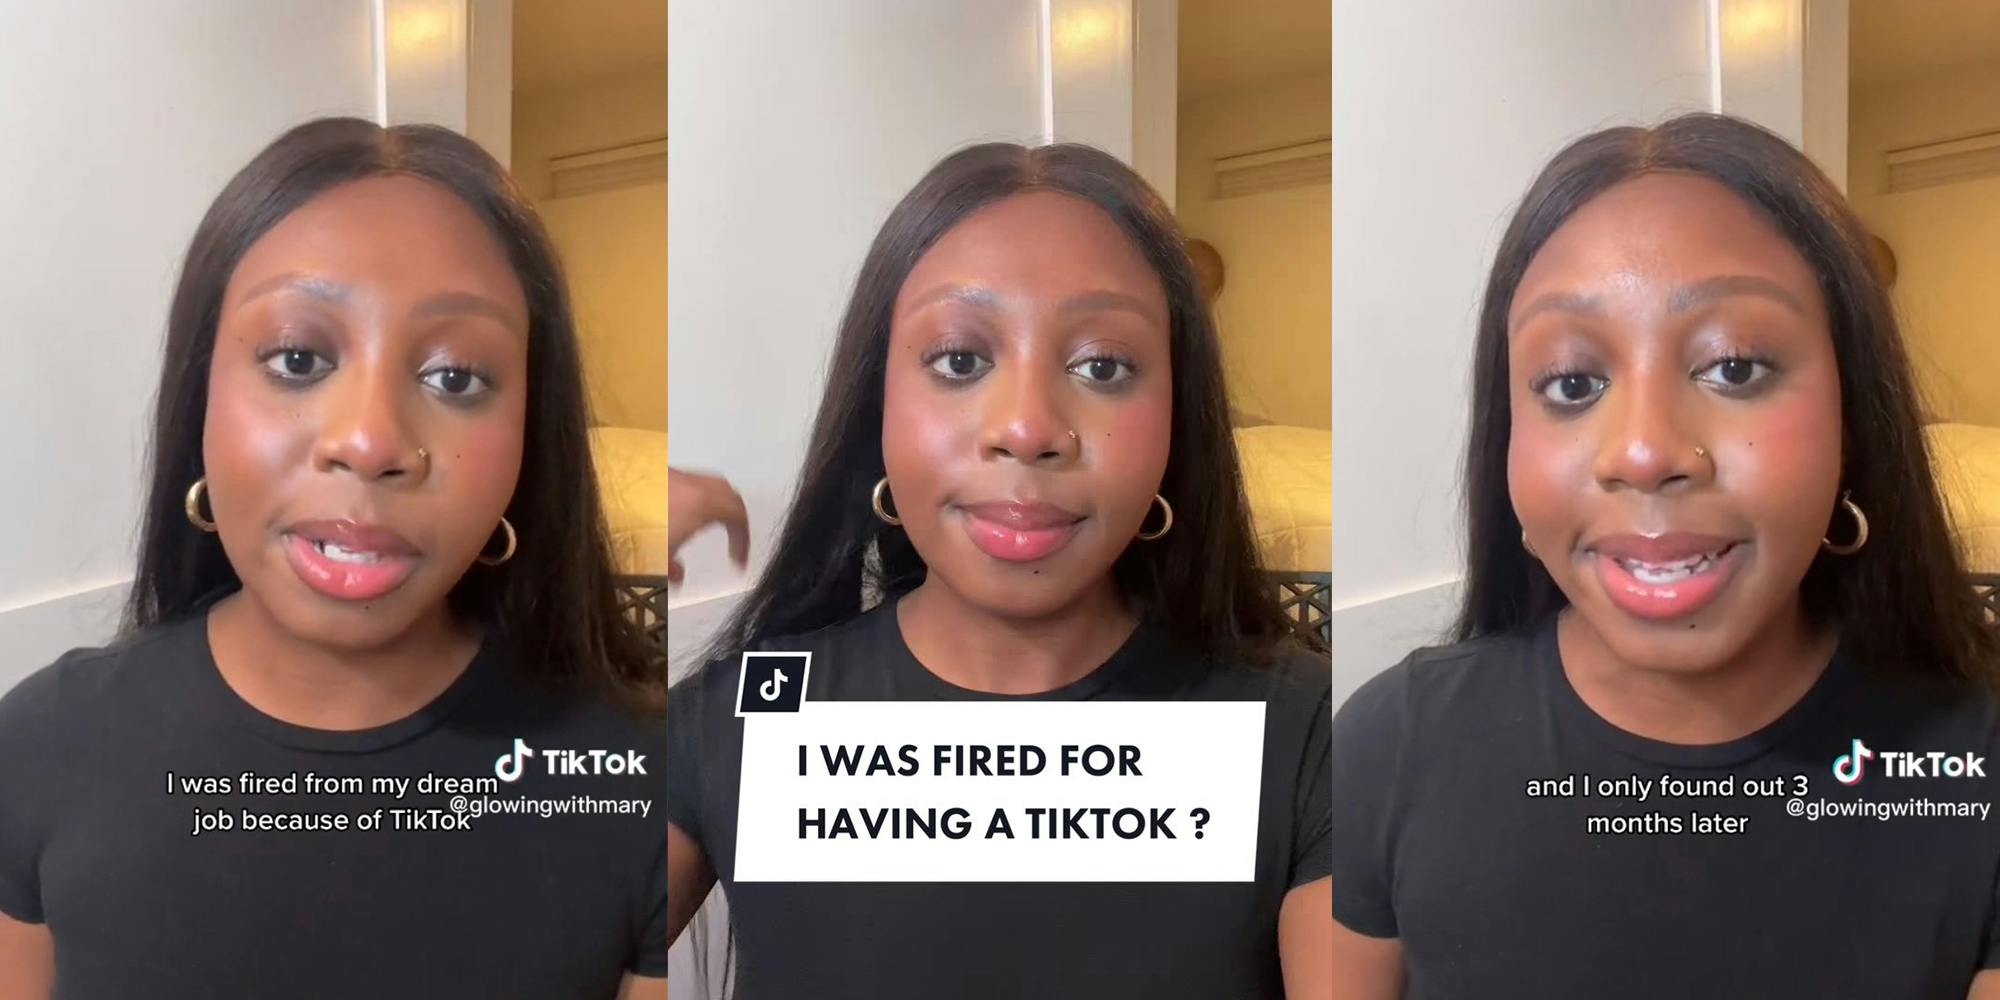 Pre-med student explains dermatologist fired her over TikTok videos